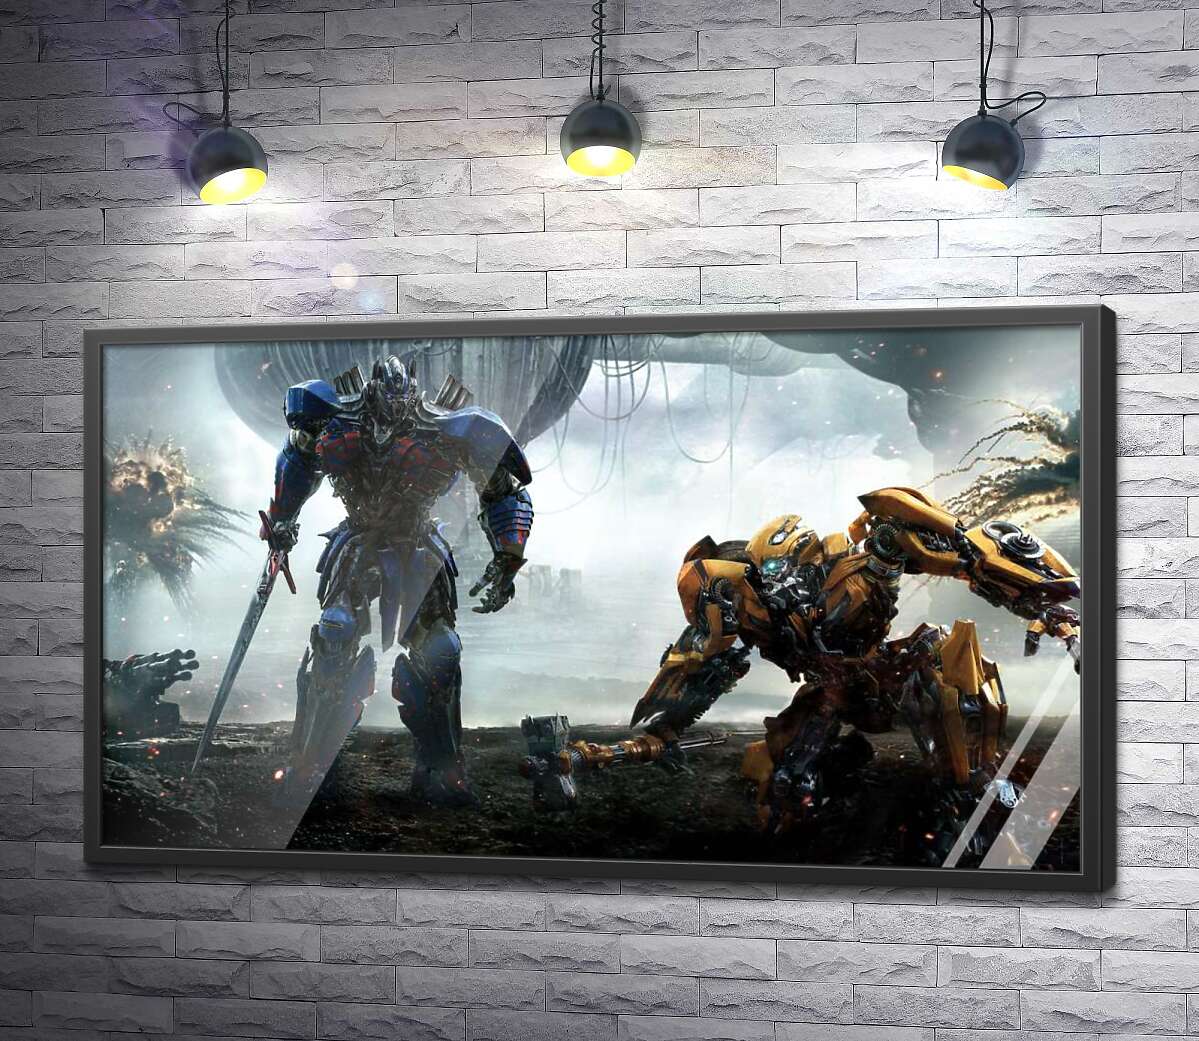 постер Автоботы Оптимус Прайм (Optimus Prime) и Бамблби (Bumblebee) – герои фильма "Трансформеры" (Transformers)